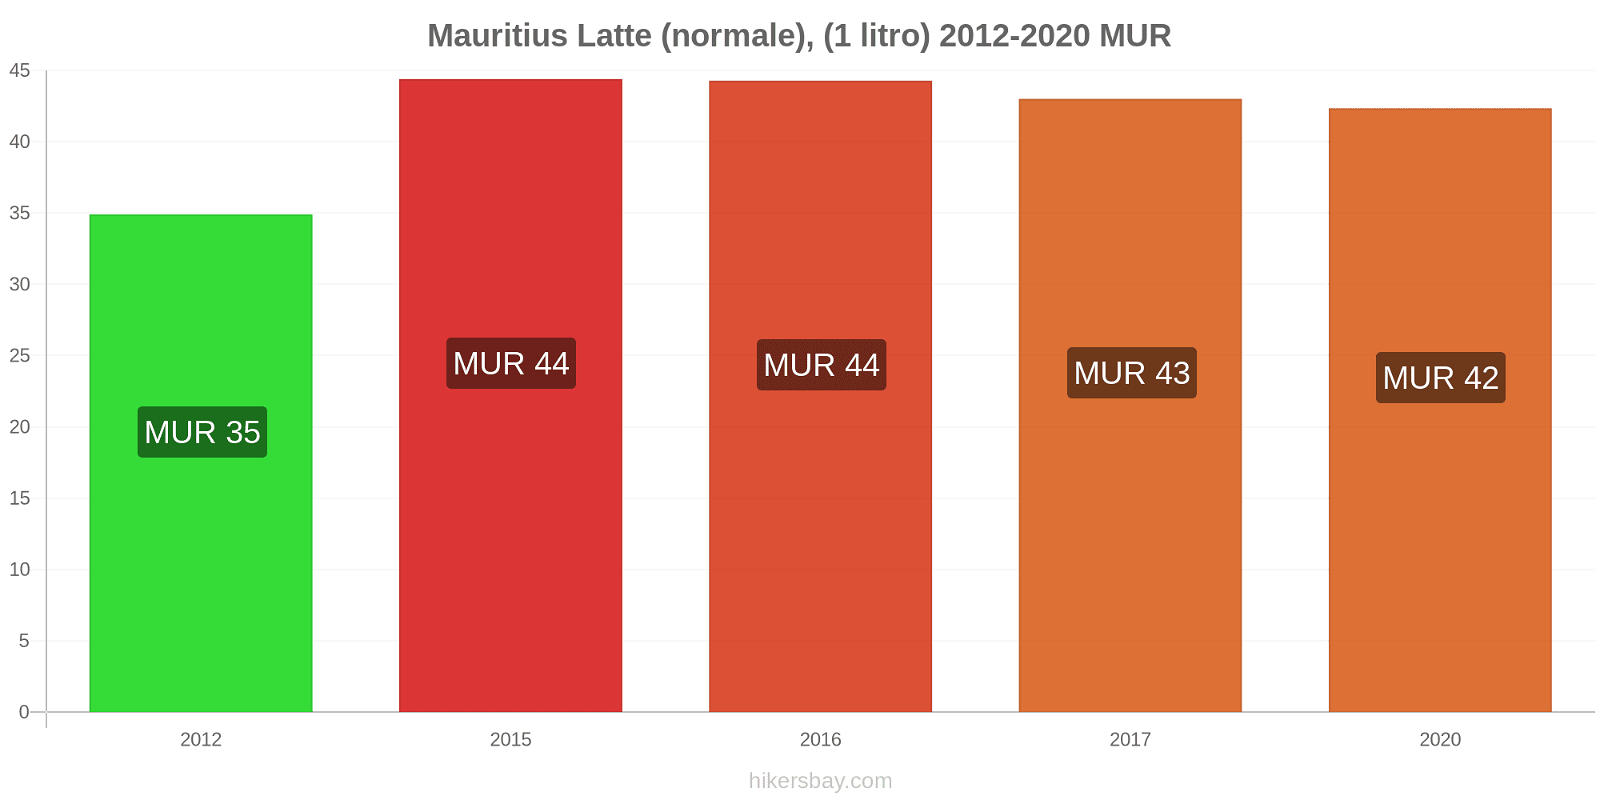 Mauritius variazioni di prezzo Latte (1 litro) hikersbay.com